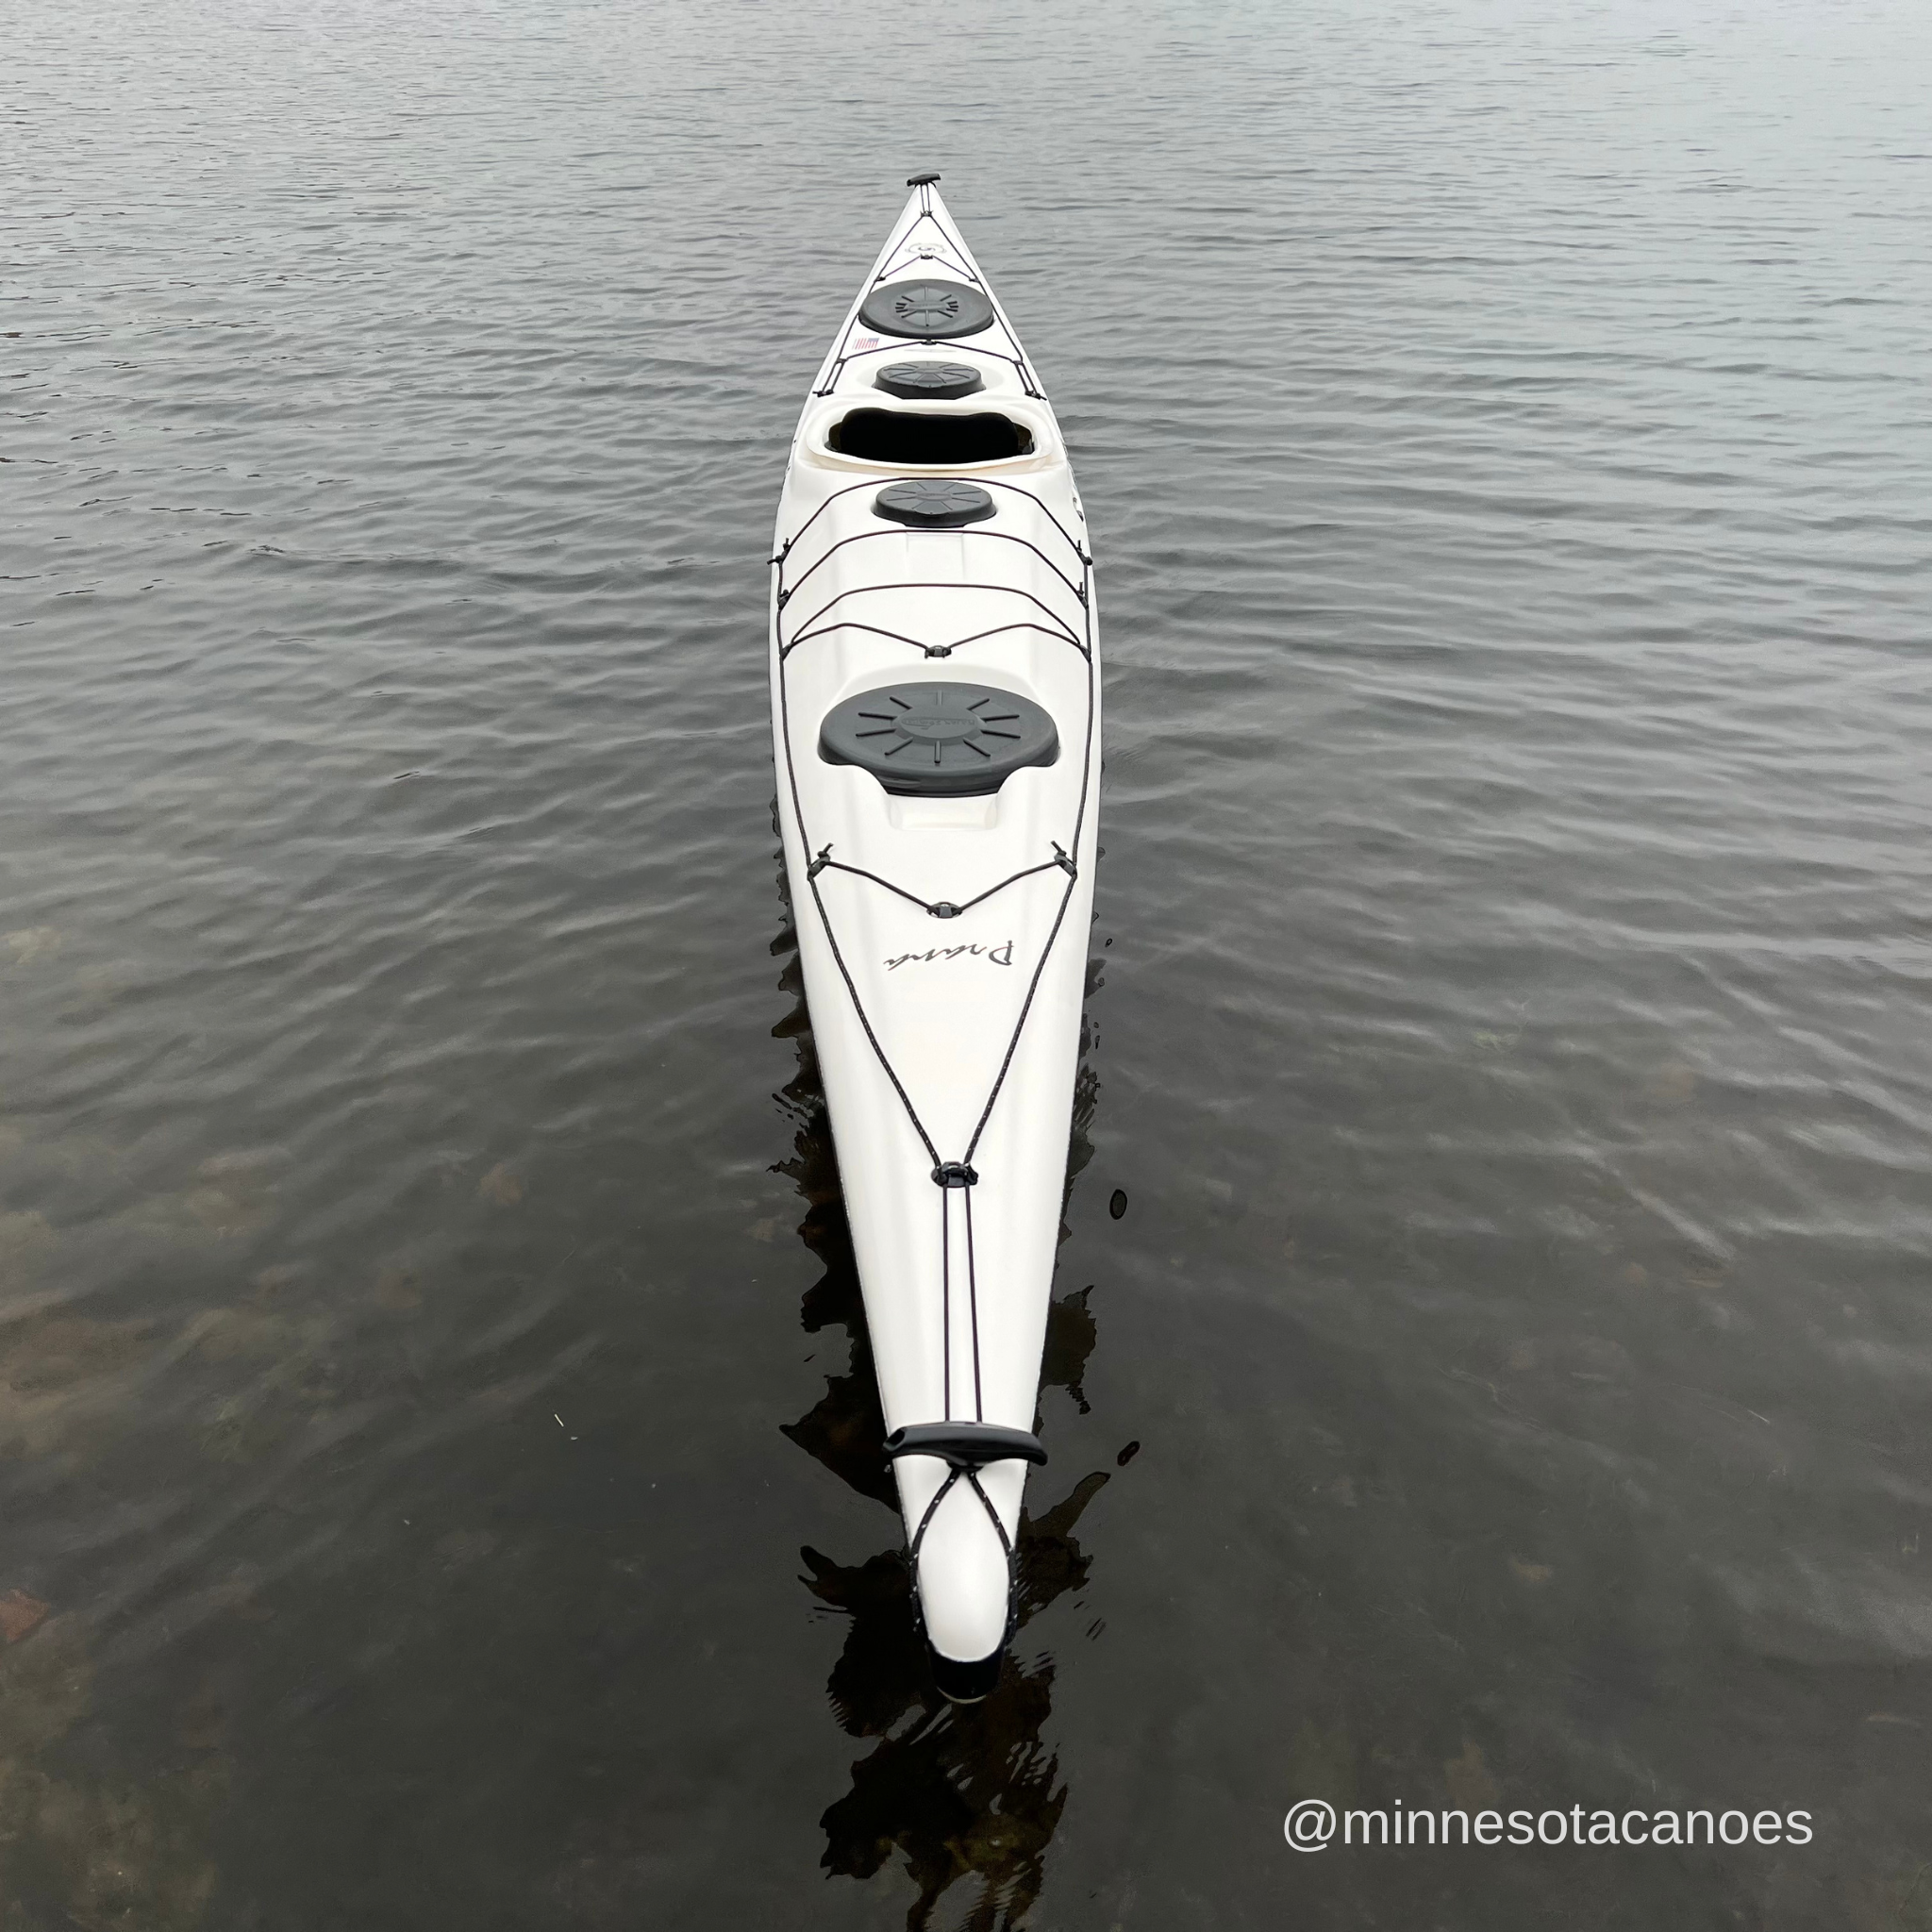 udvide Afståelse komfort PRANA (17' 0") White and Black Color Danish Style Current Designs Kaya –  Minnesota Canoes